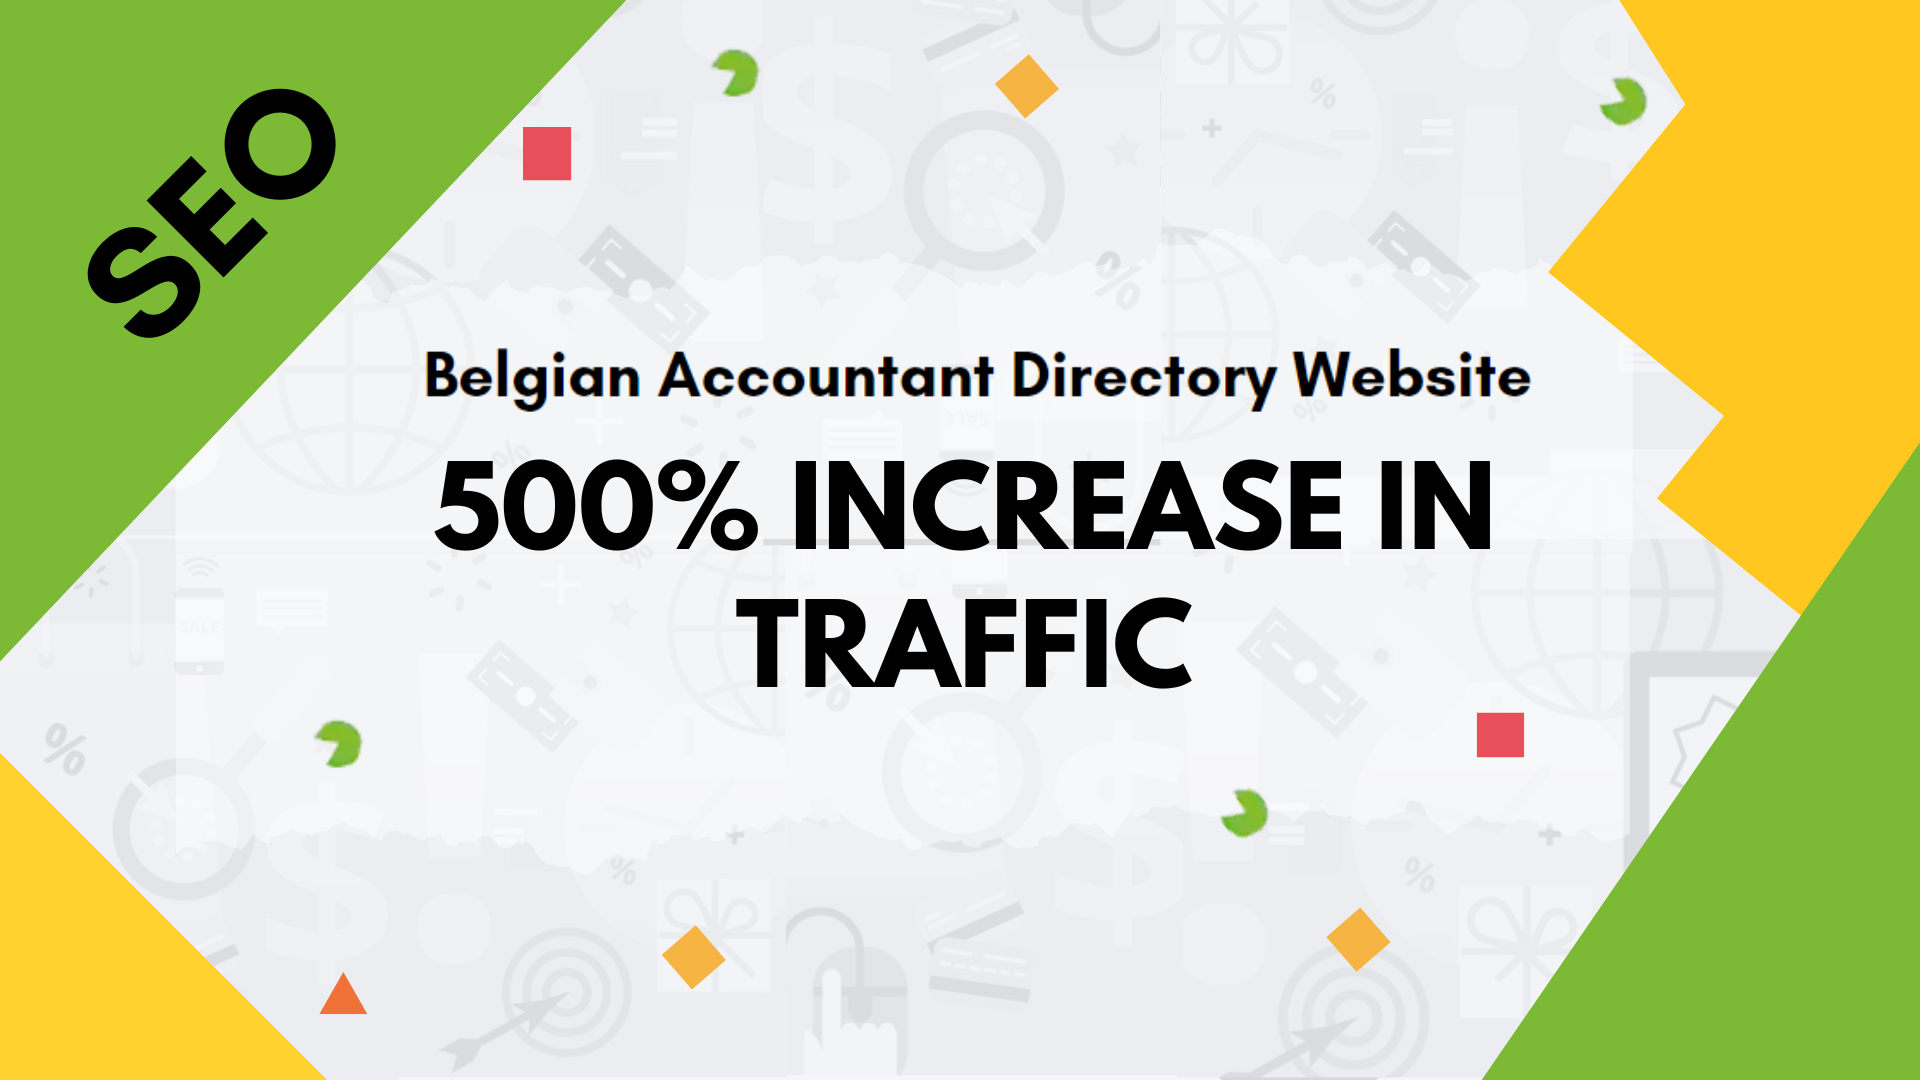 Belgian Accountant Directory Website